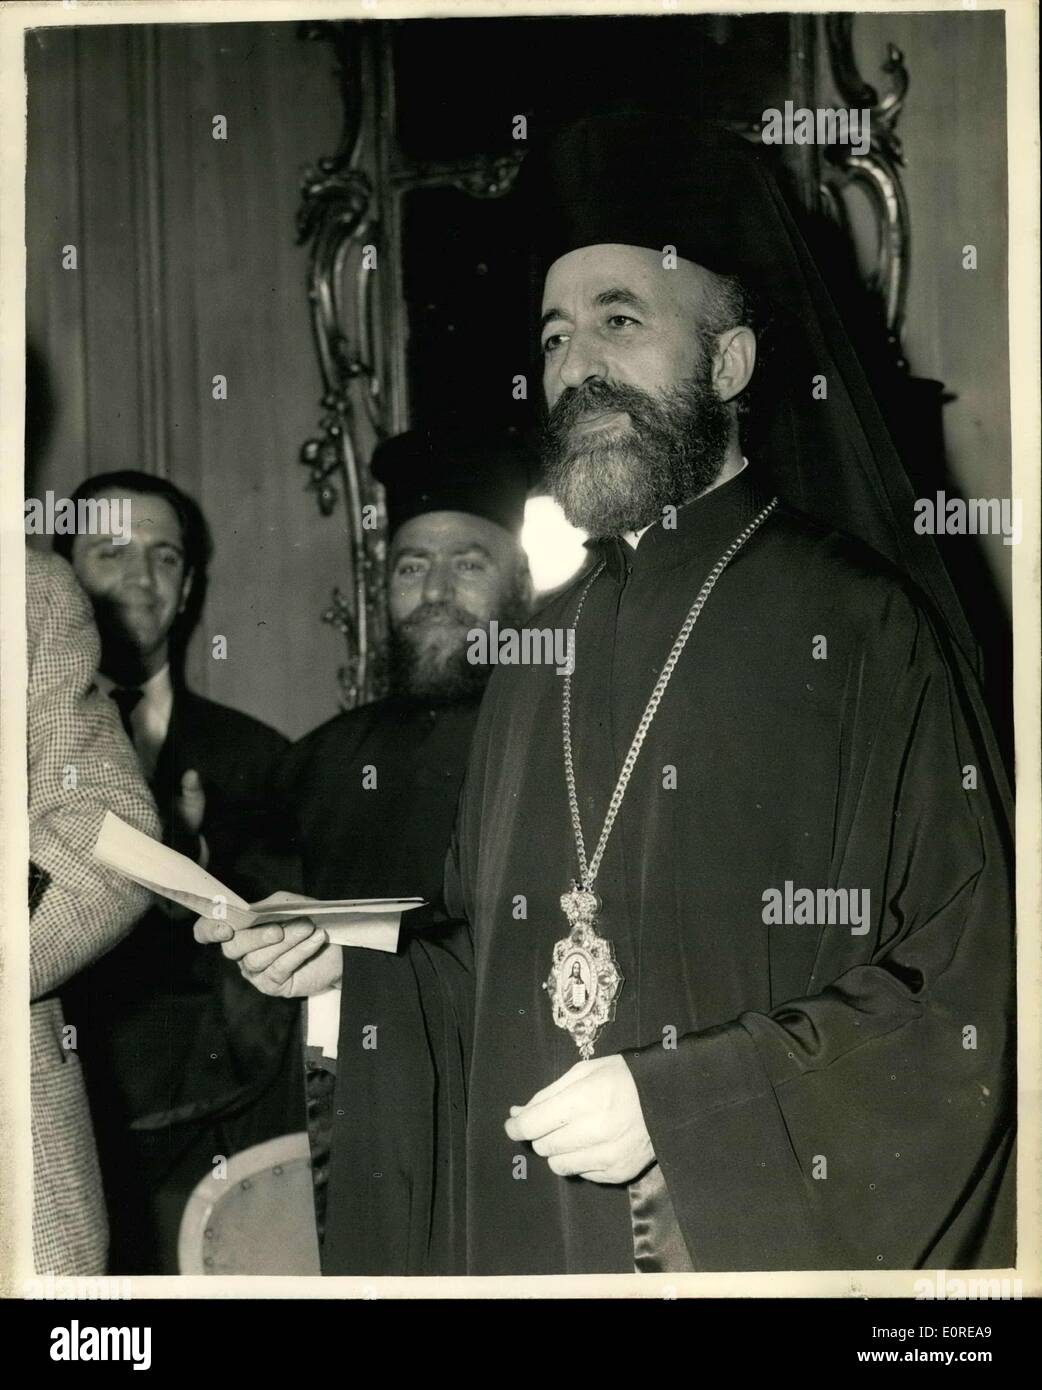 Febbraio 19, 1959 - Cipro firmato l'accordo. L Arcivescovo Makarios dà conferenza stampa.: mostra fotografica Arcivescovo Makarios visto fare una dichiarazione alla stampa, presso il Dorchester Hotel di questa sera, dopo la casa di Lancester firma dell'accordo di Cipro. Foto Stock